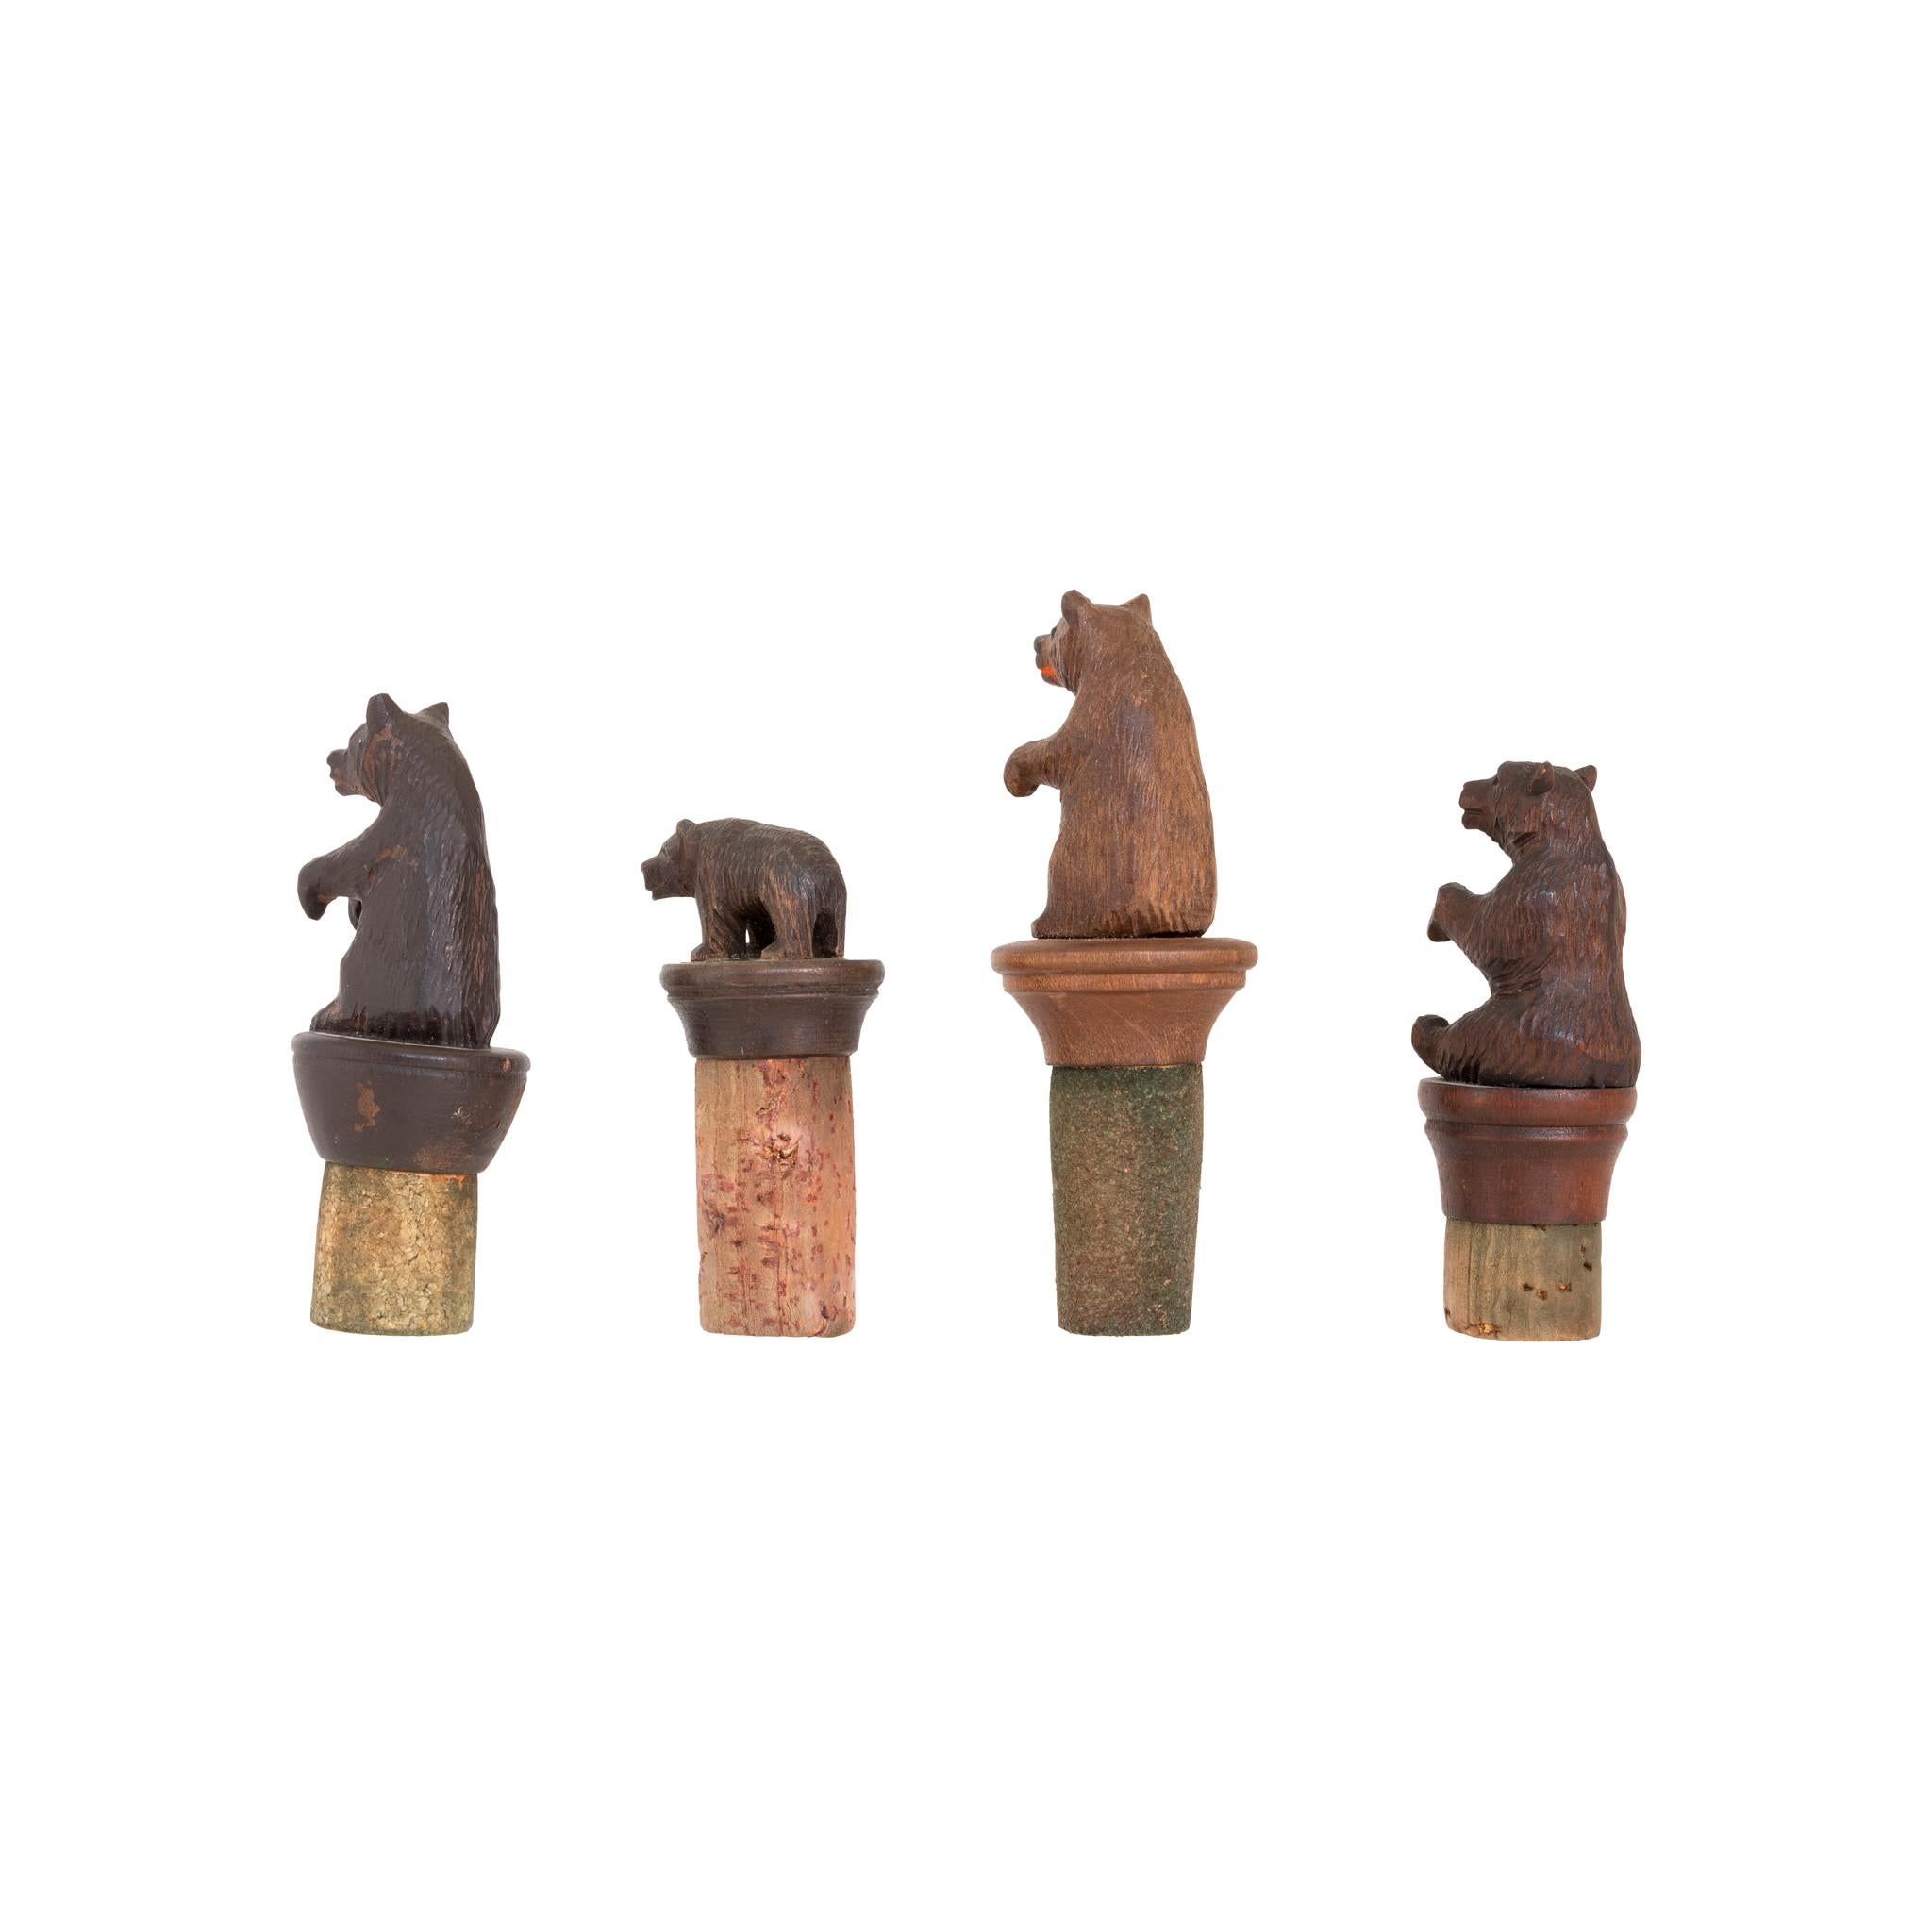 Sammlung von vier geschnitzten Schweizer Miniaturbären, die auf Korken für Weinflaschenverschlüsse montiert sind. Alle unterschiedlich.

PERIOD: CIRCA 1900
URSPRUNG: Schweiz
GRÖSSE: Längste 2 1/2